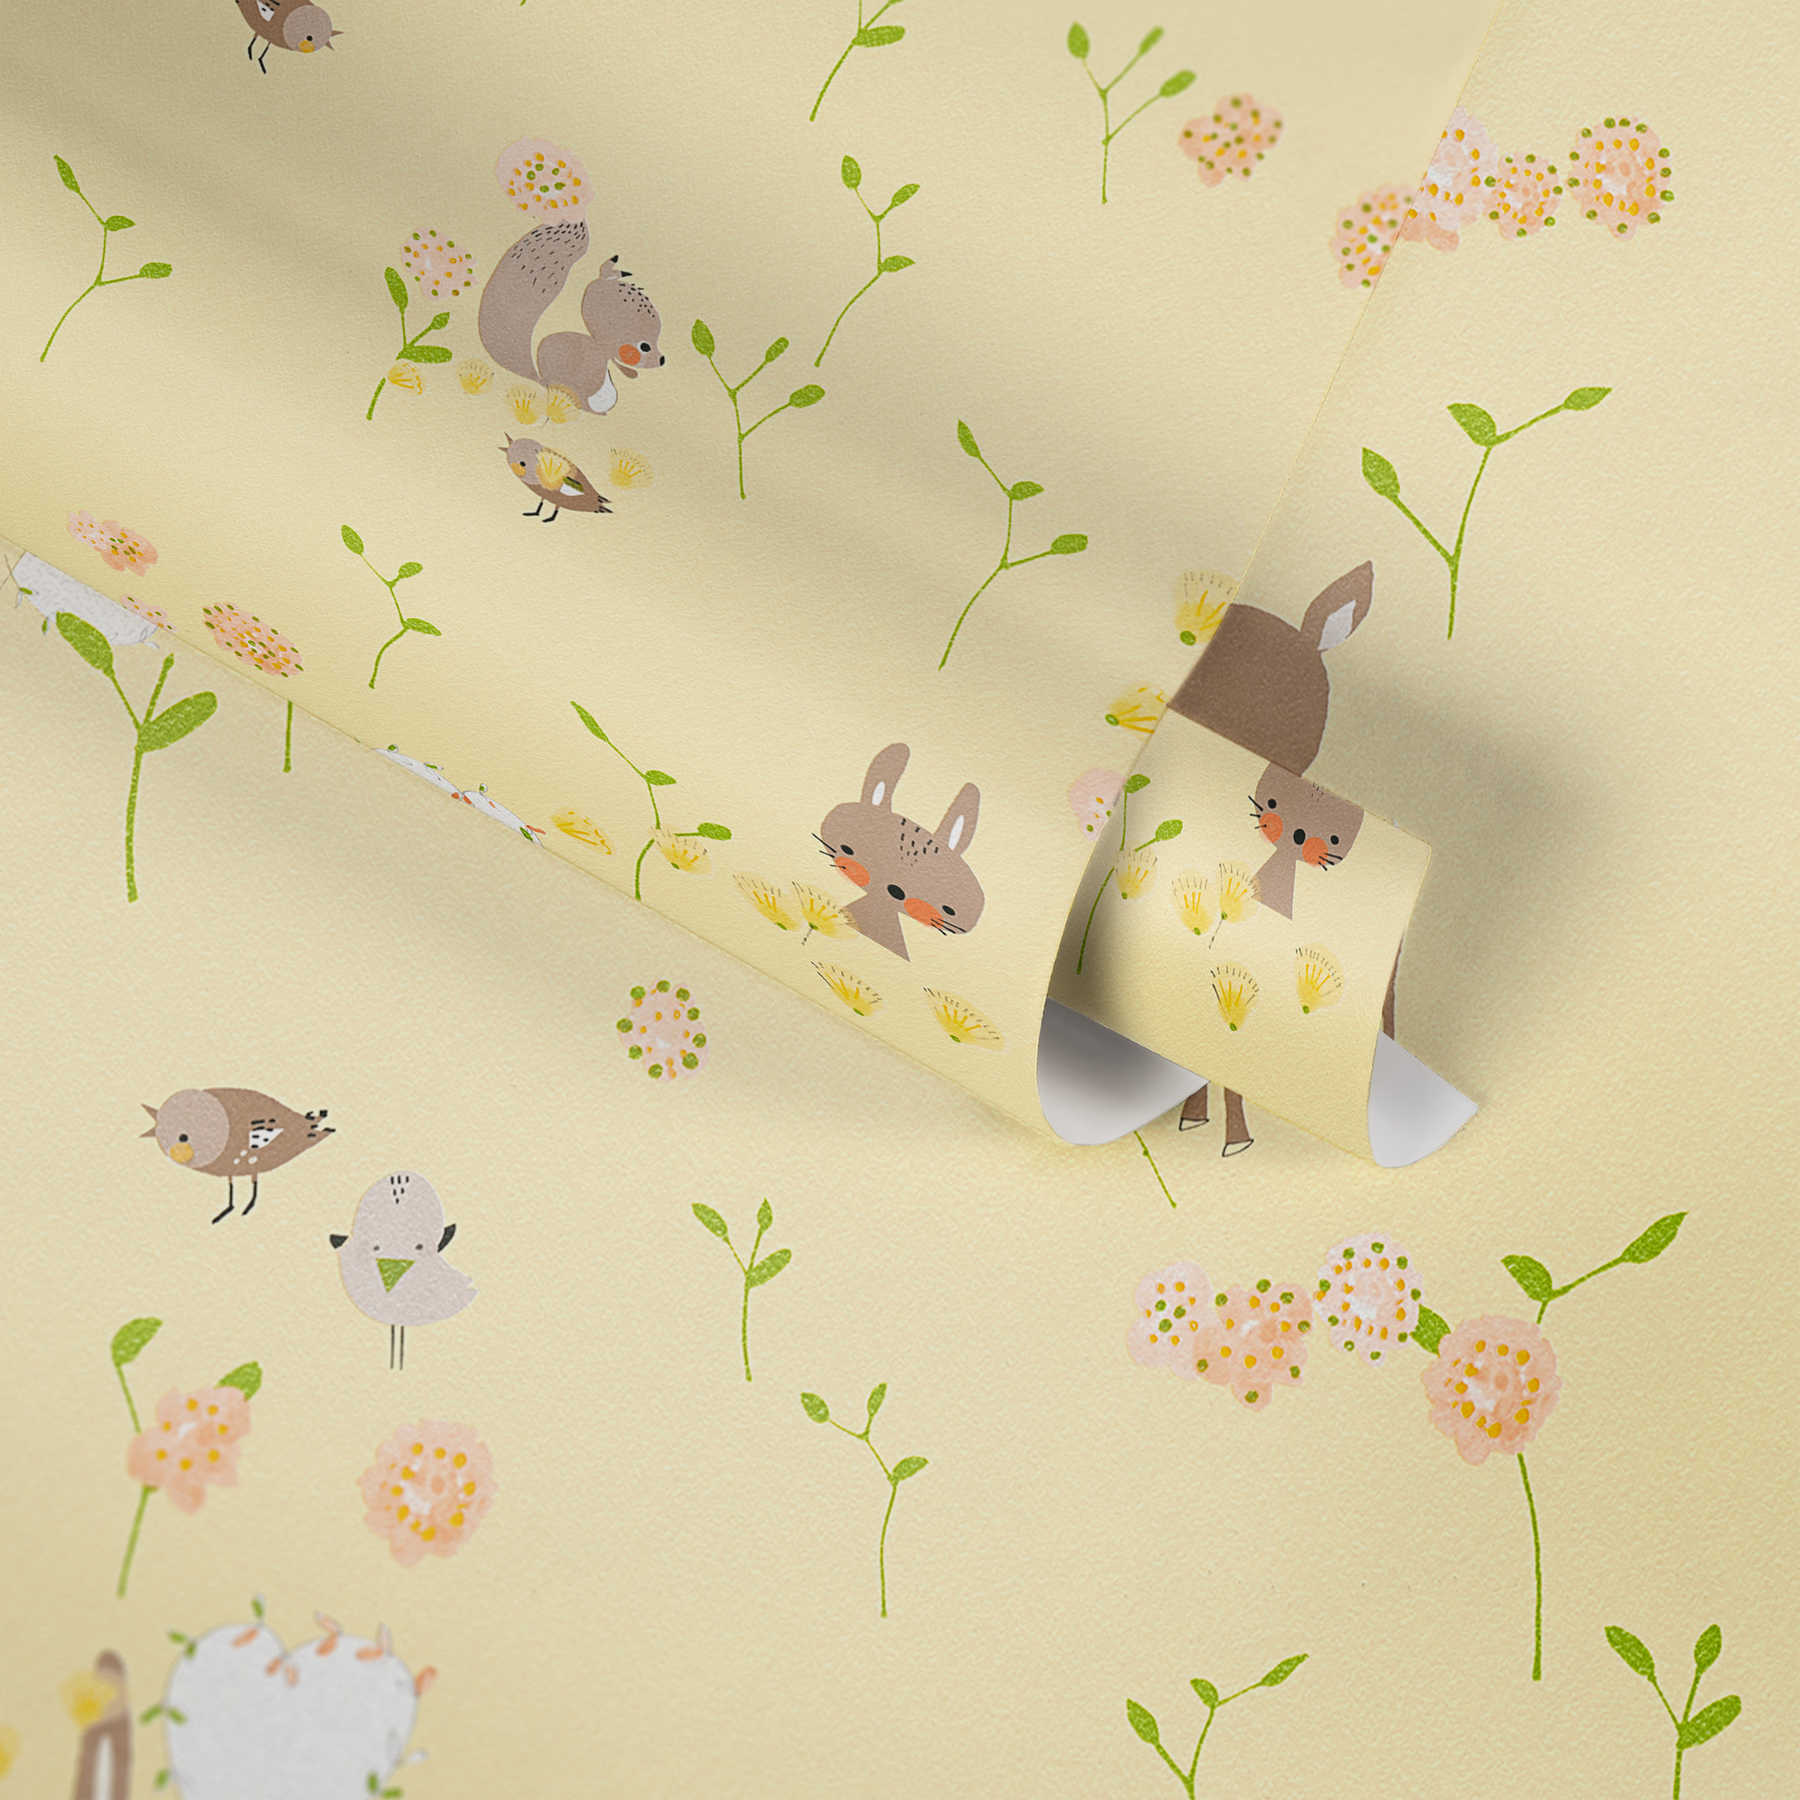             Papier peint avec animaux de la forêt pour bébé et chambre d'enfant - jaune, vert
        